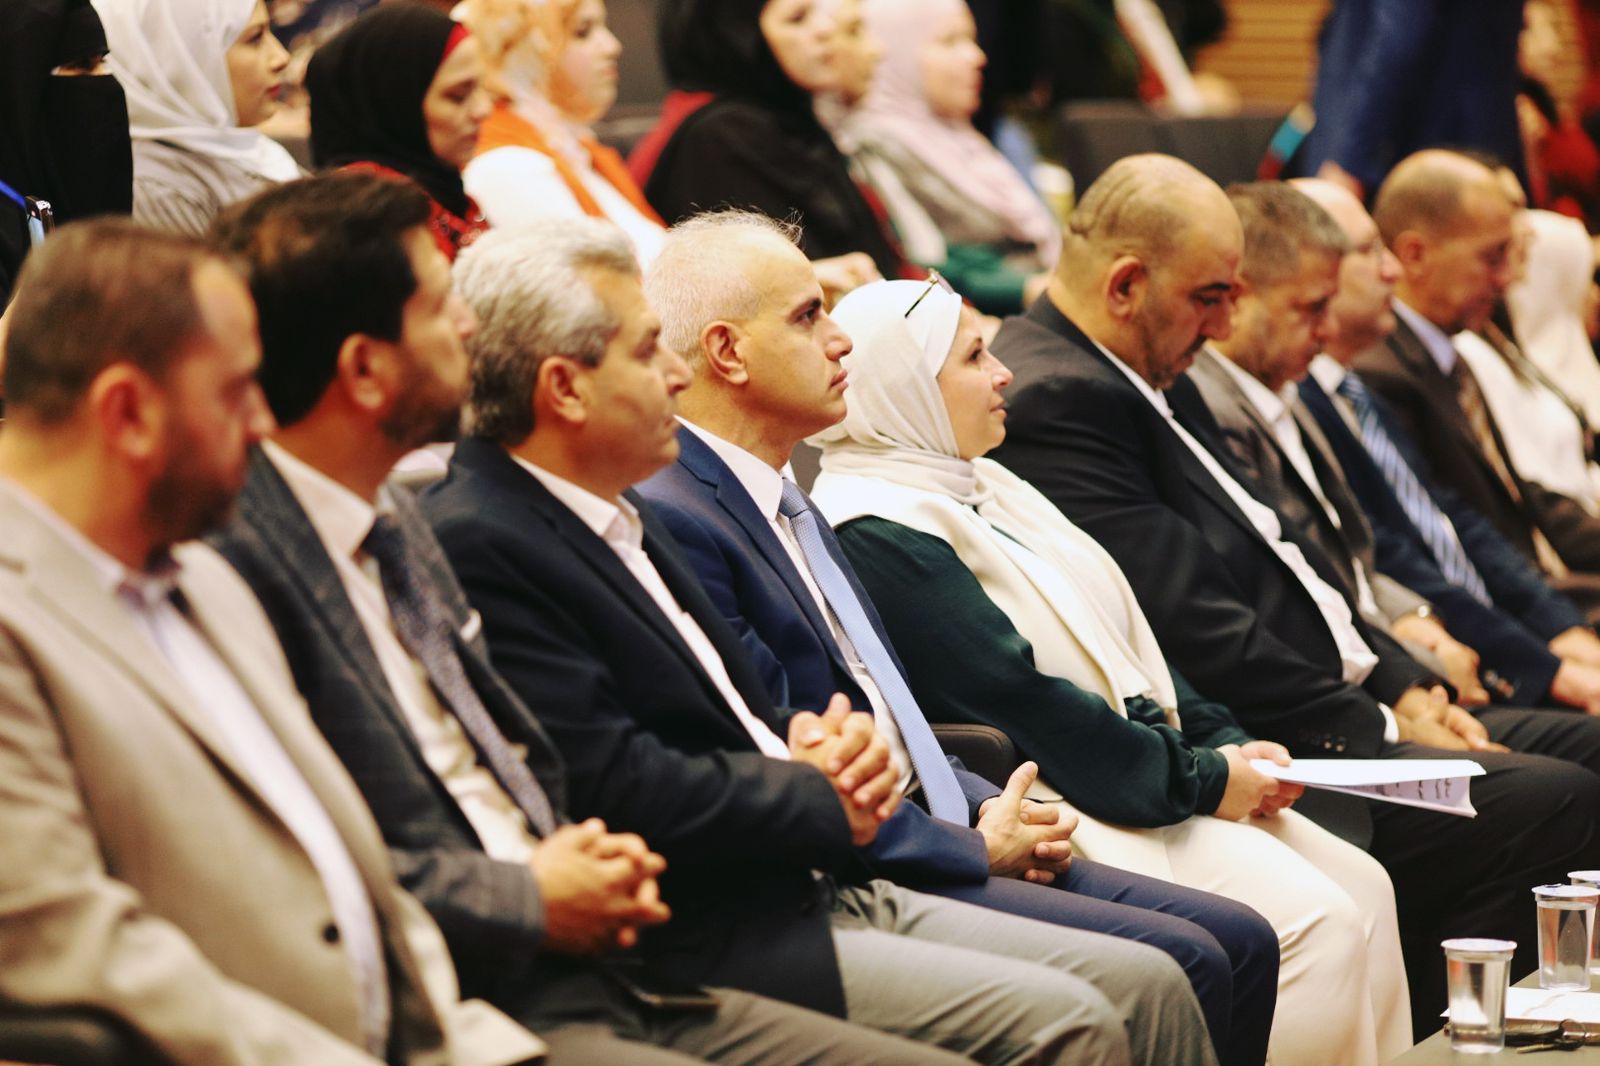 “تربوية الأردنية” تقيم معرضاً لمشاريع الاستقصاء لطلبة برنامج الدبلوم العالي لإعداد المعلمين